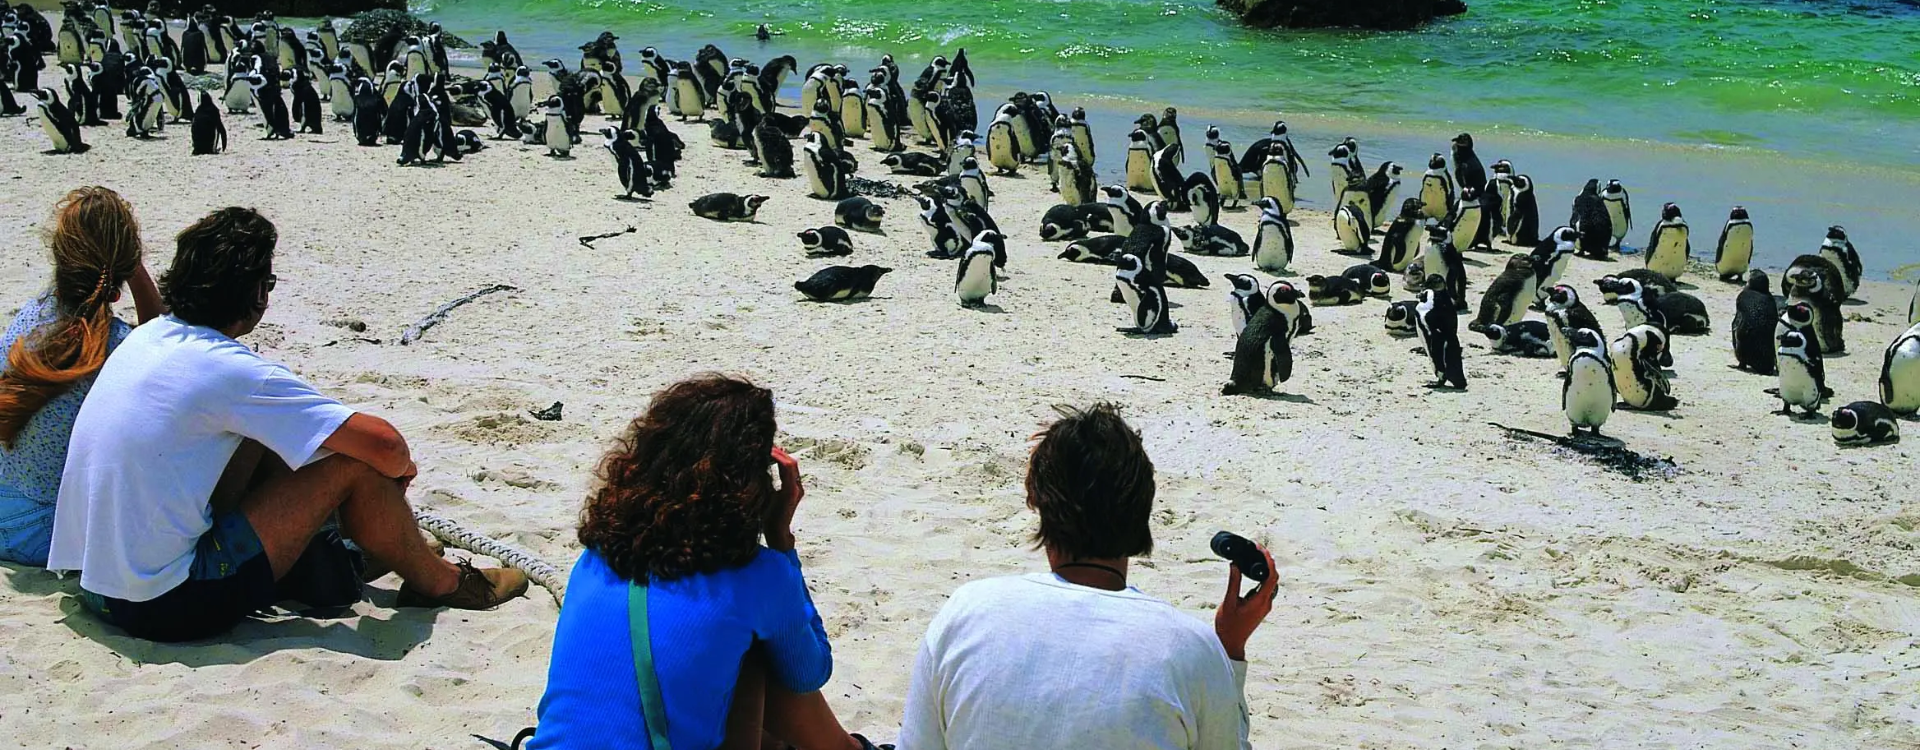 Cape Town Penguin Viewing Spots